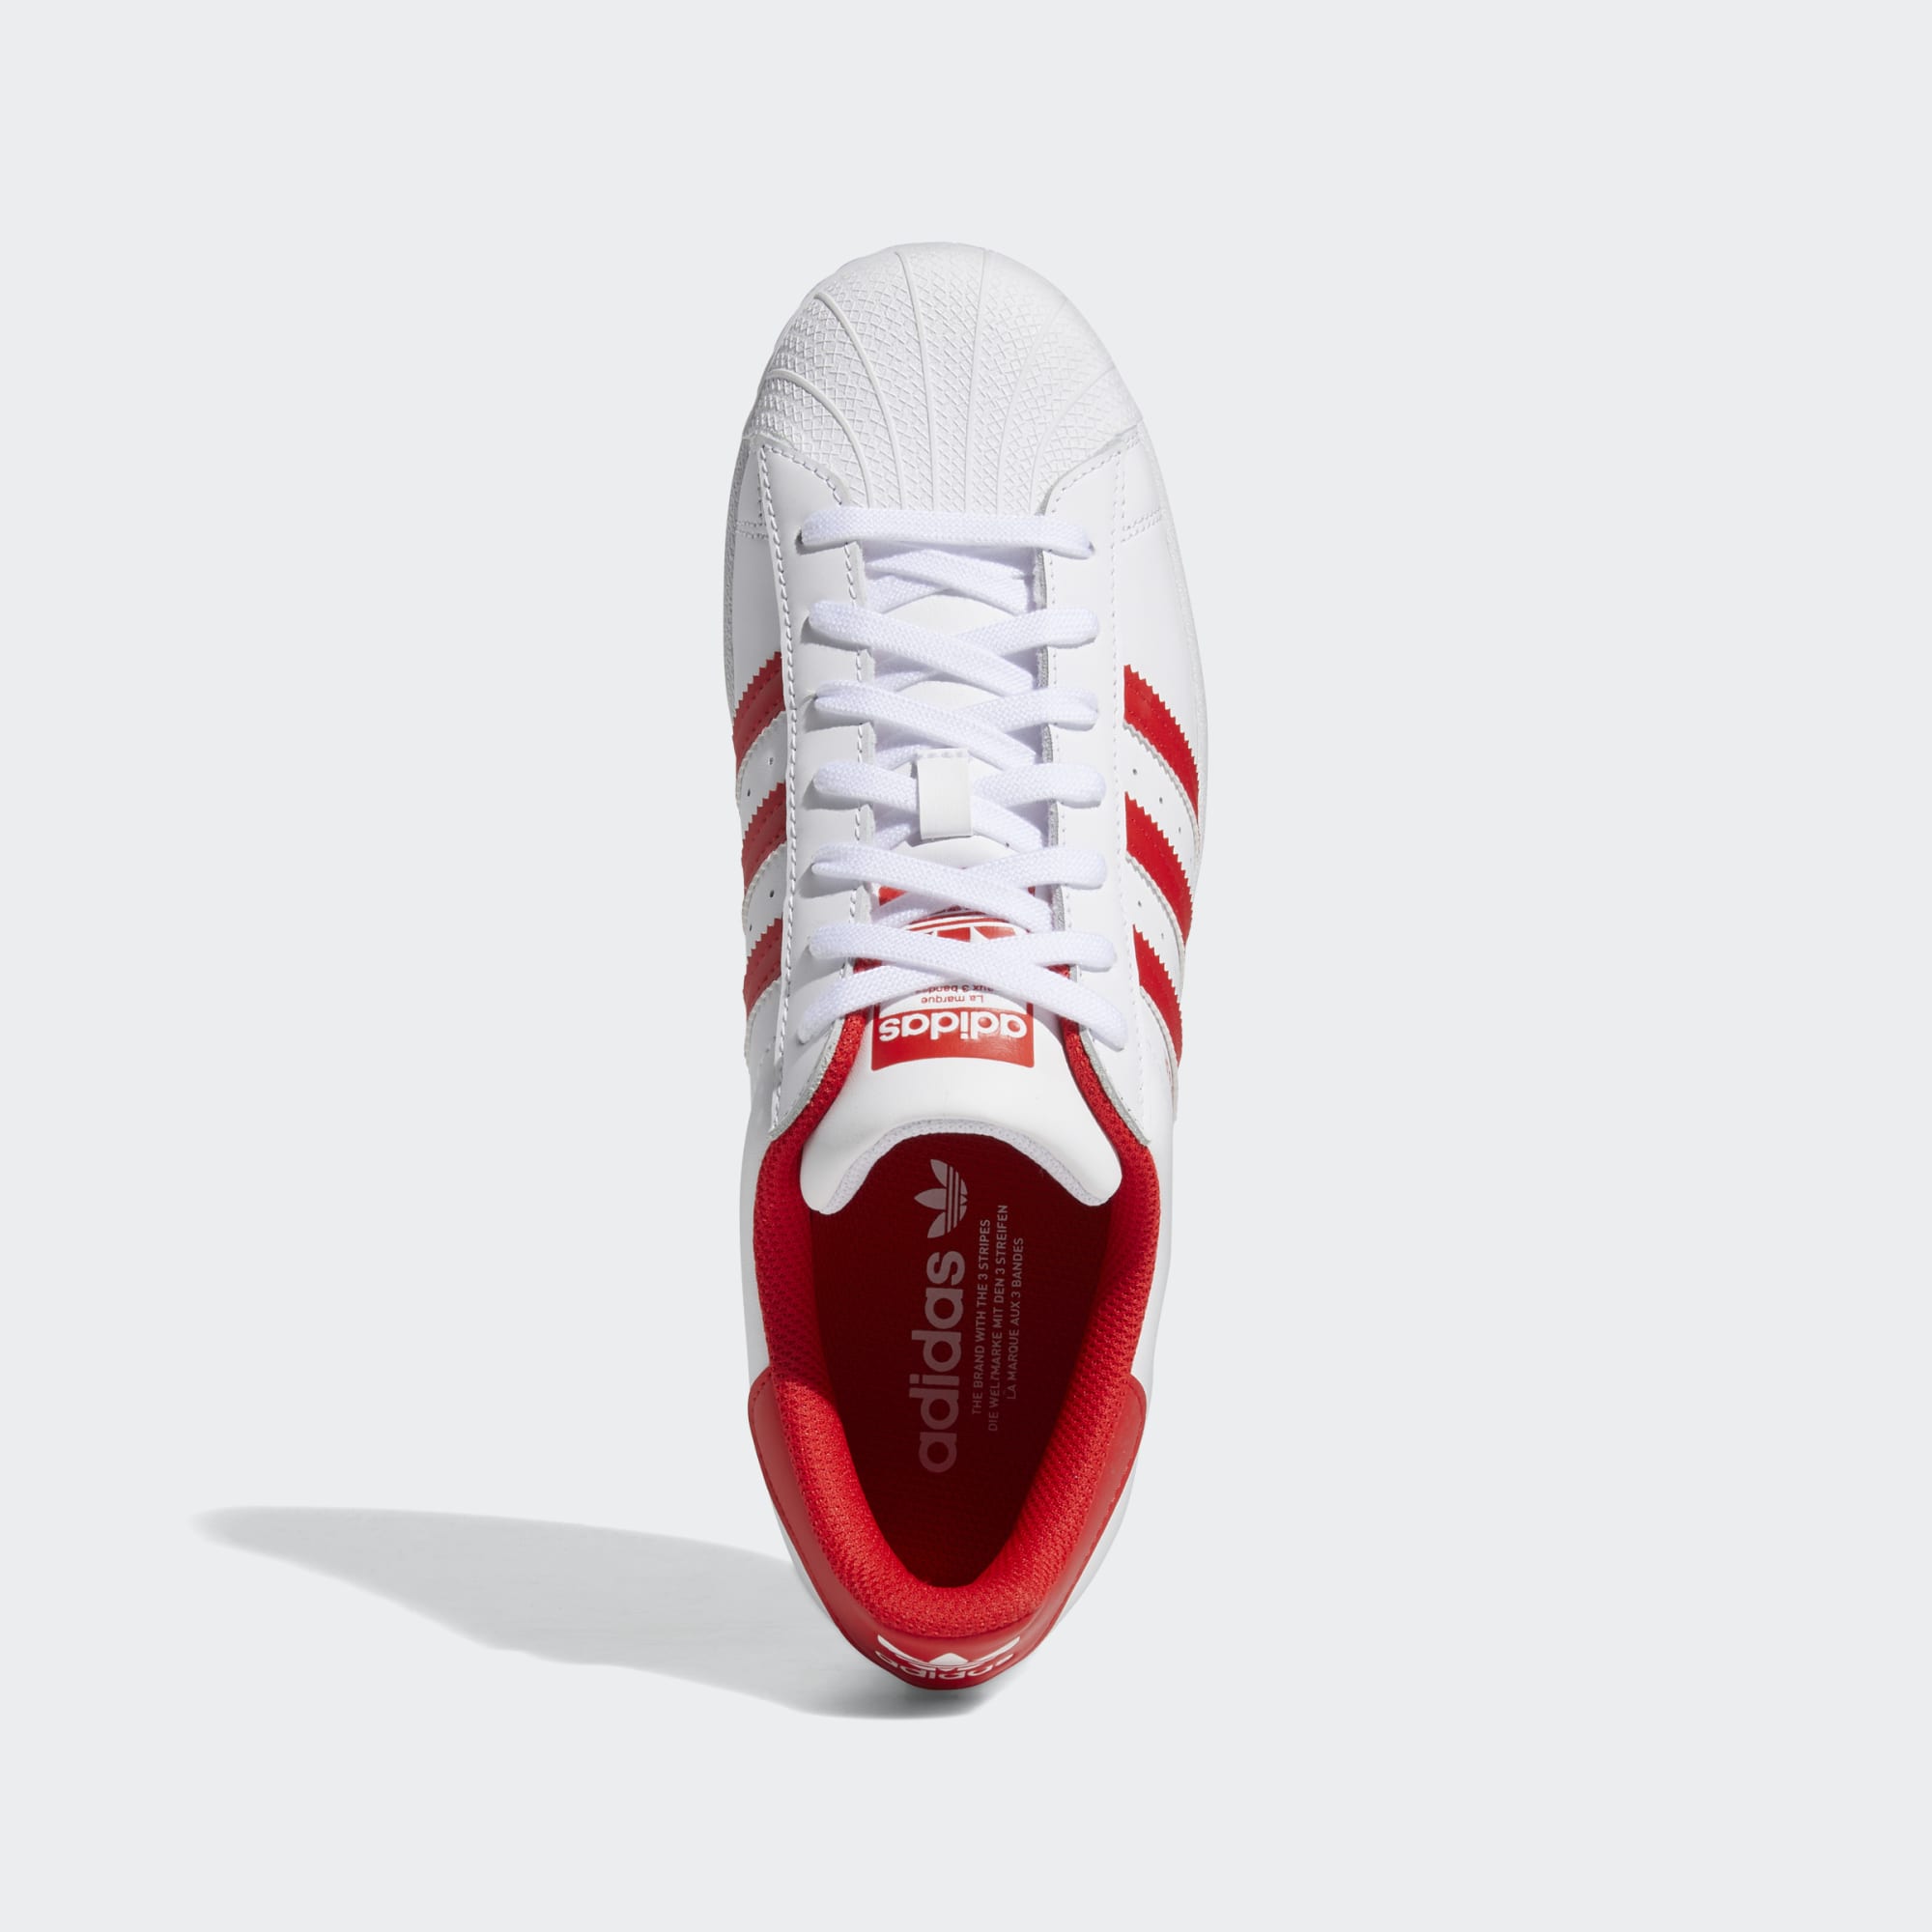 Adidas Superstar White Red Stripe